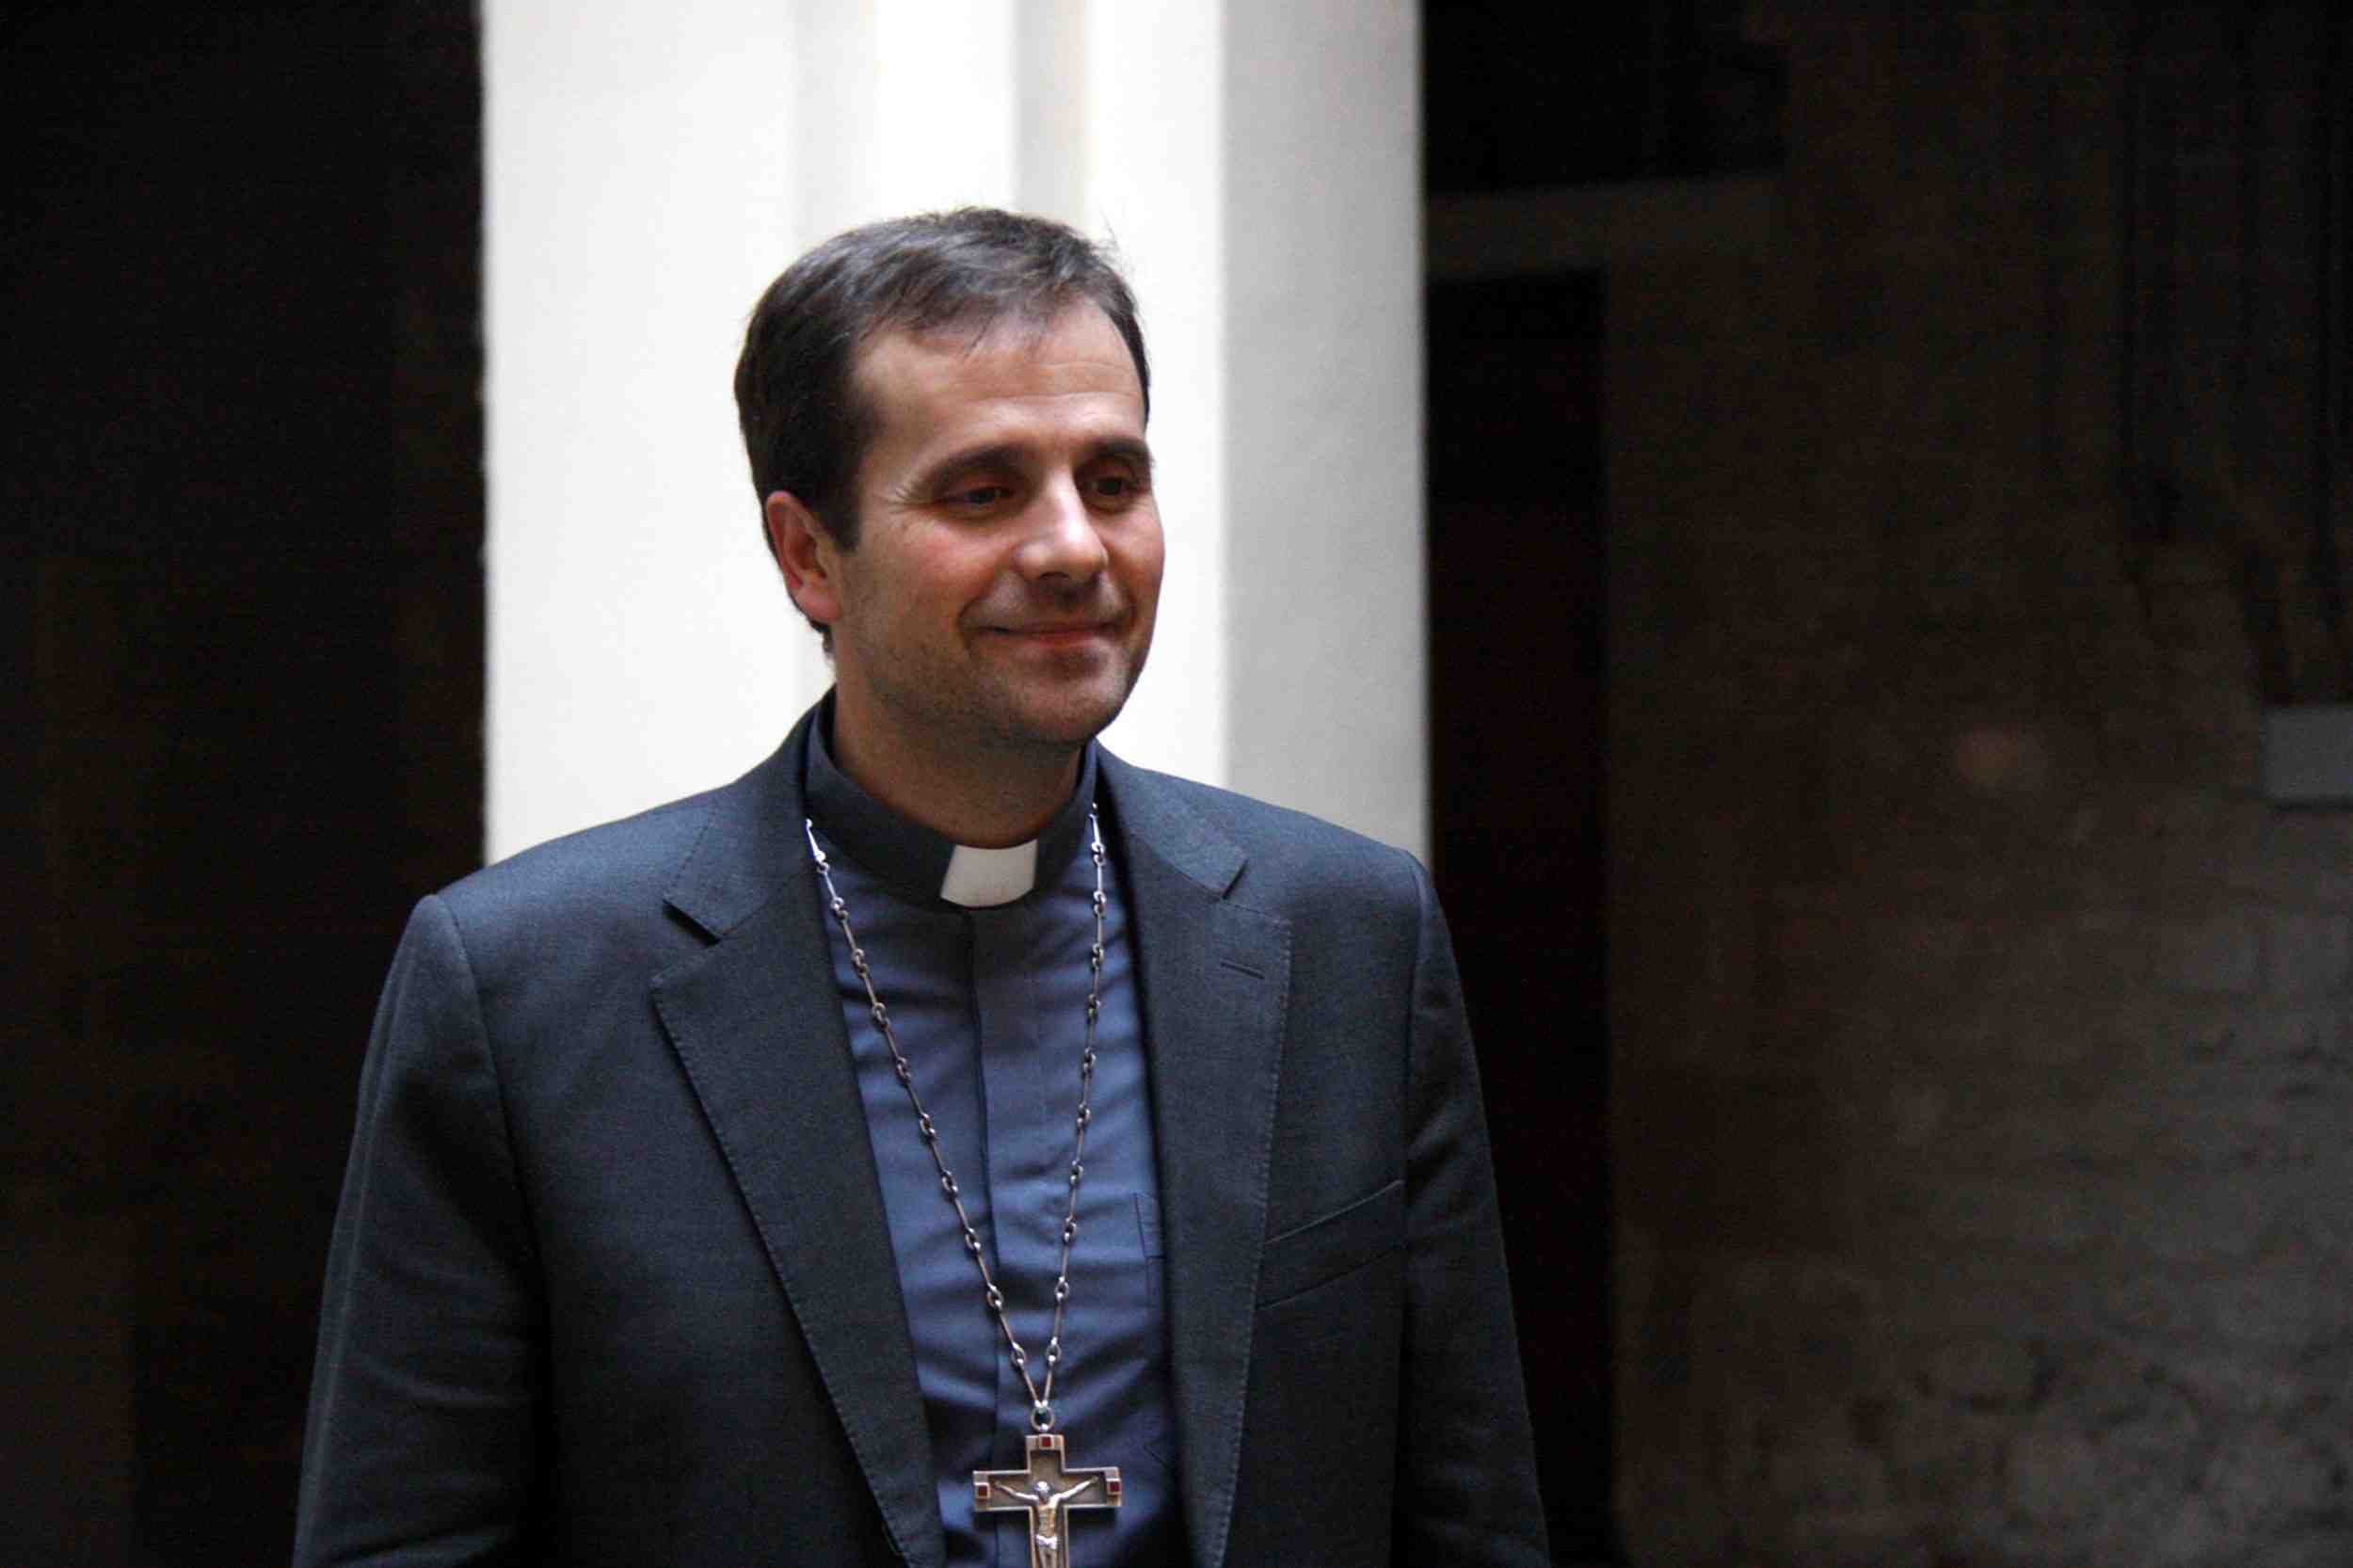 El obispo de Solsona pide disculpas después de una semana de polémica